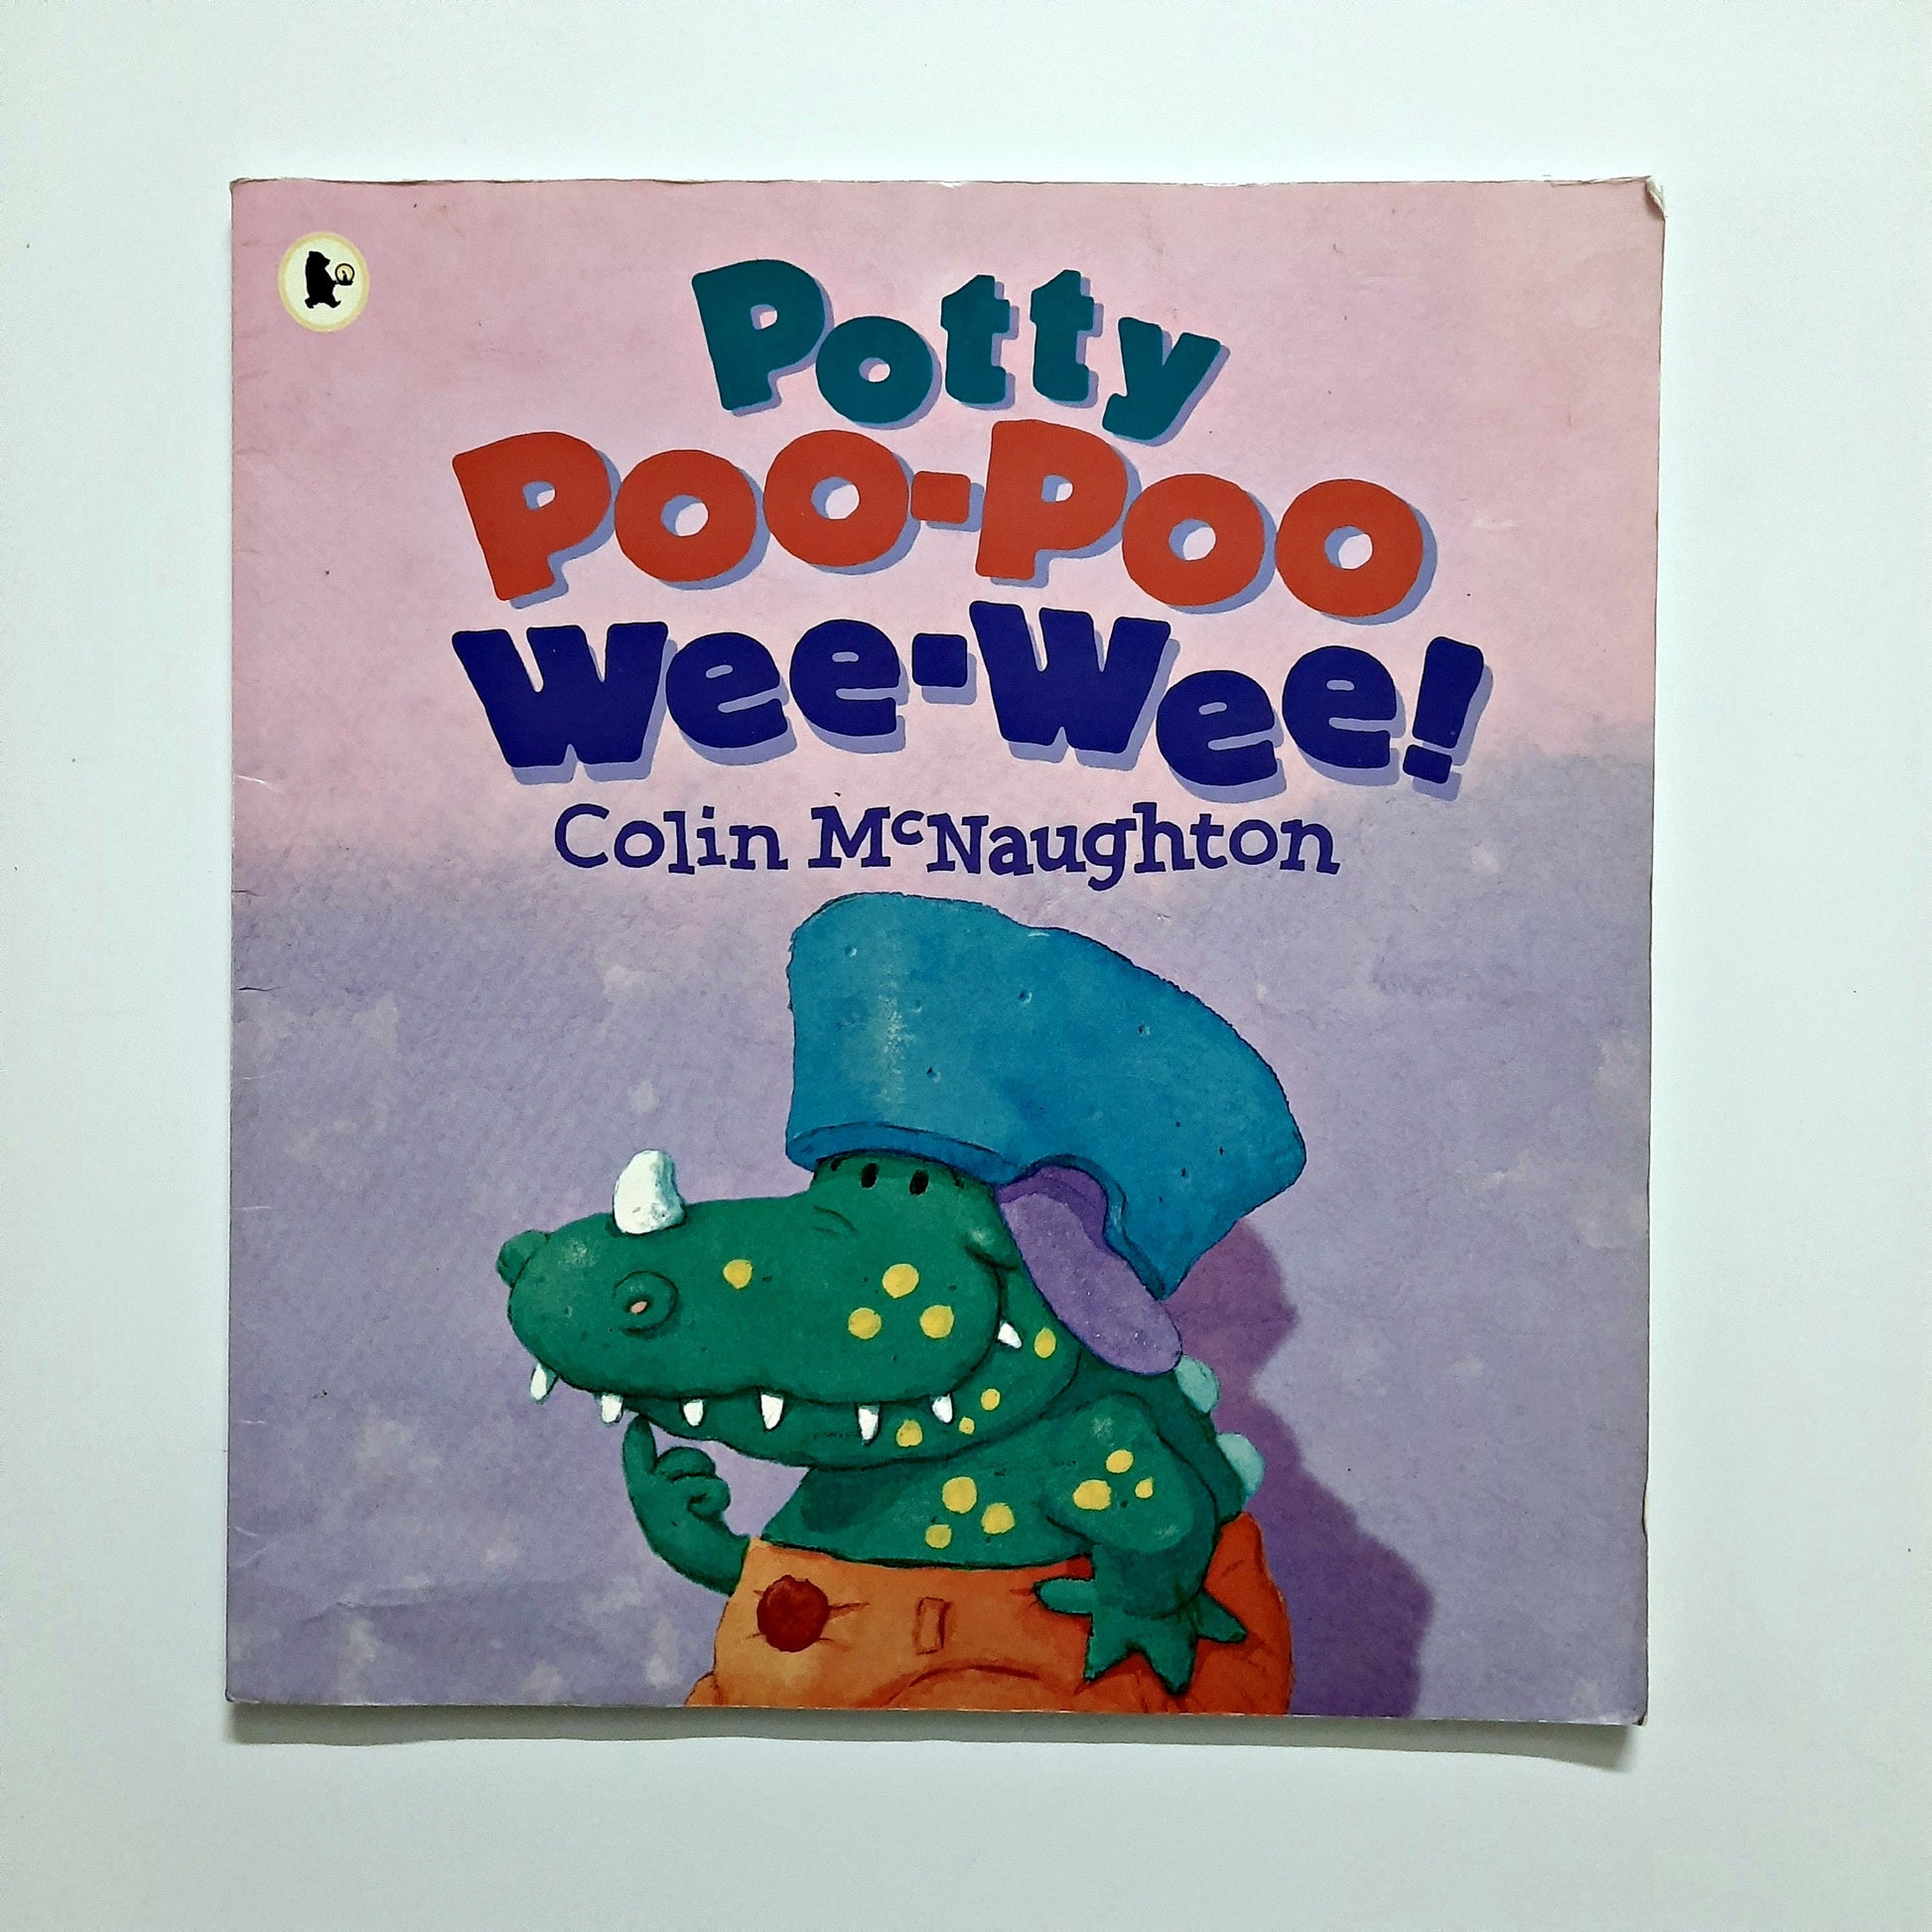 Potty Poo-Poo Wee-Wee